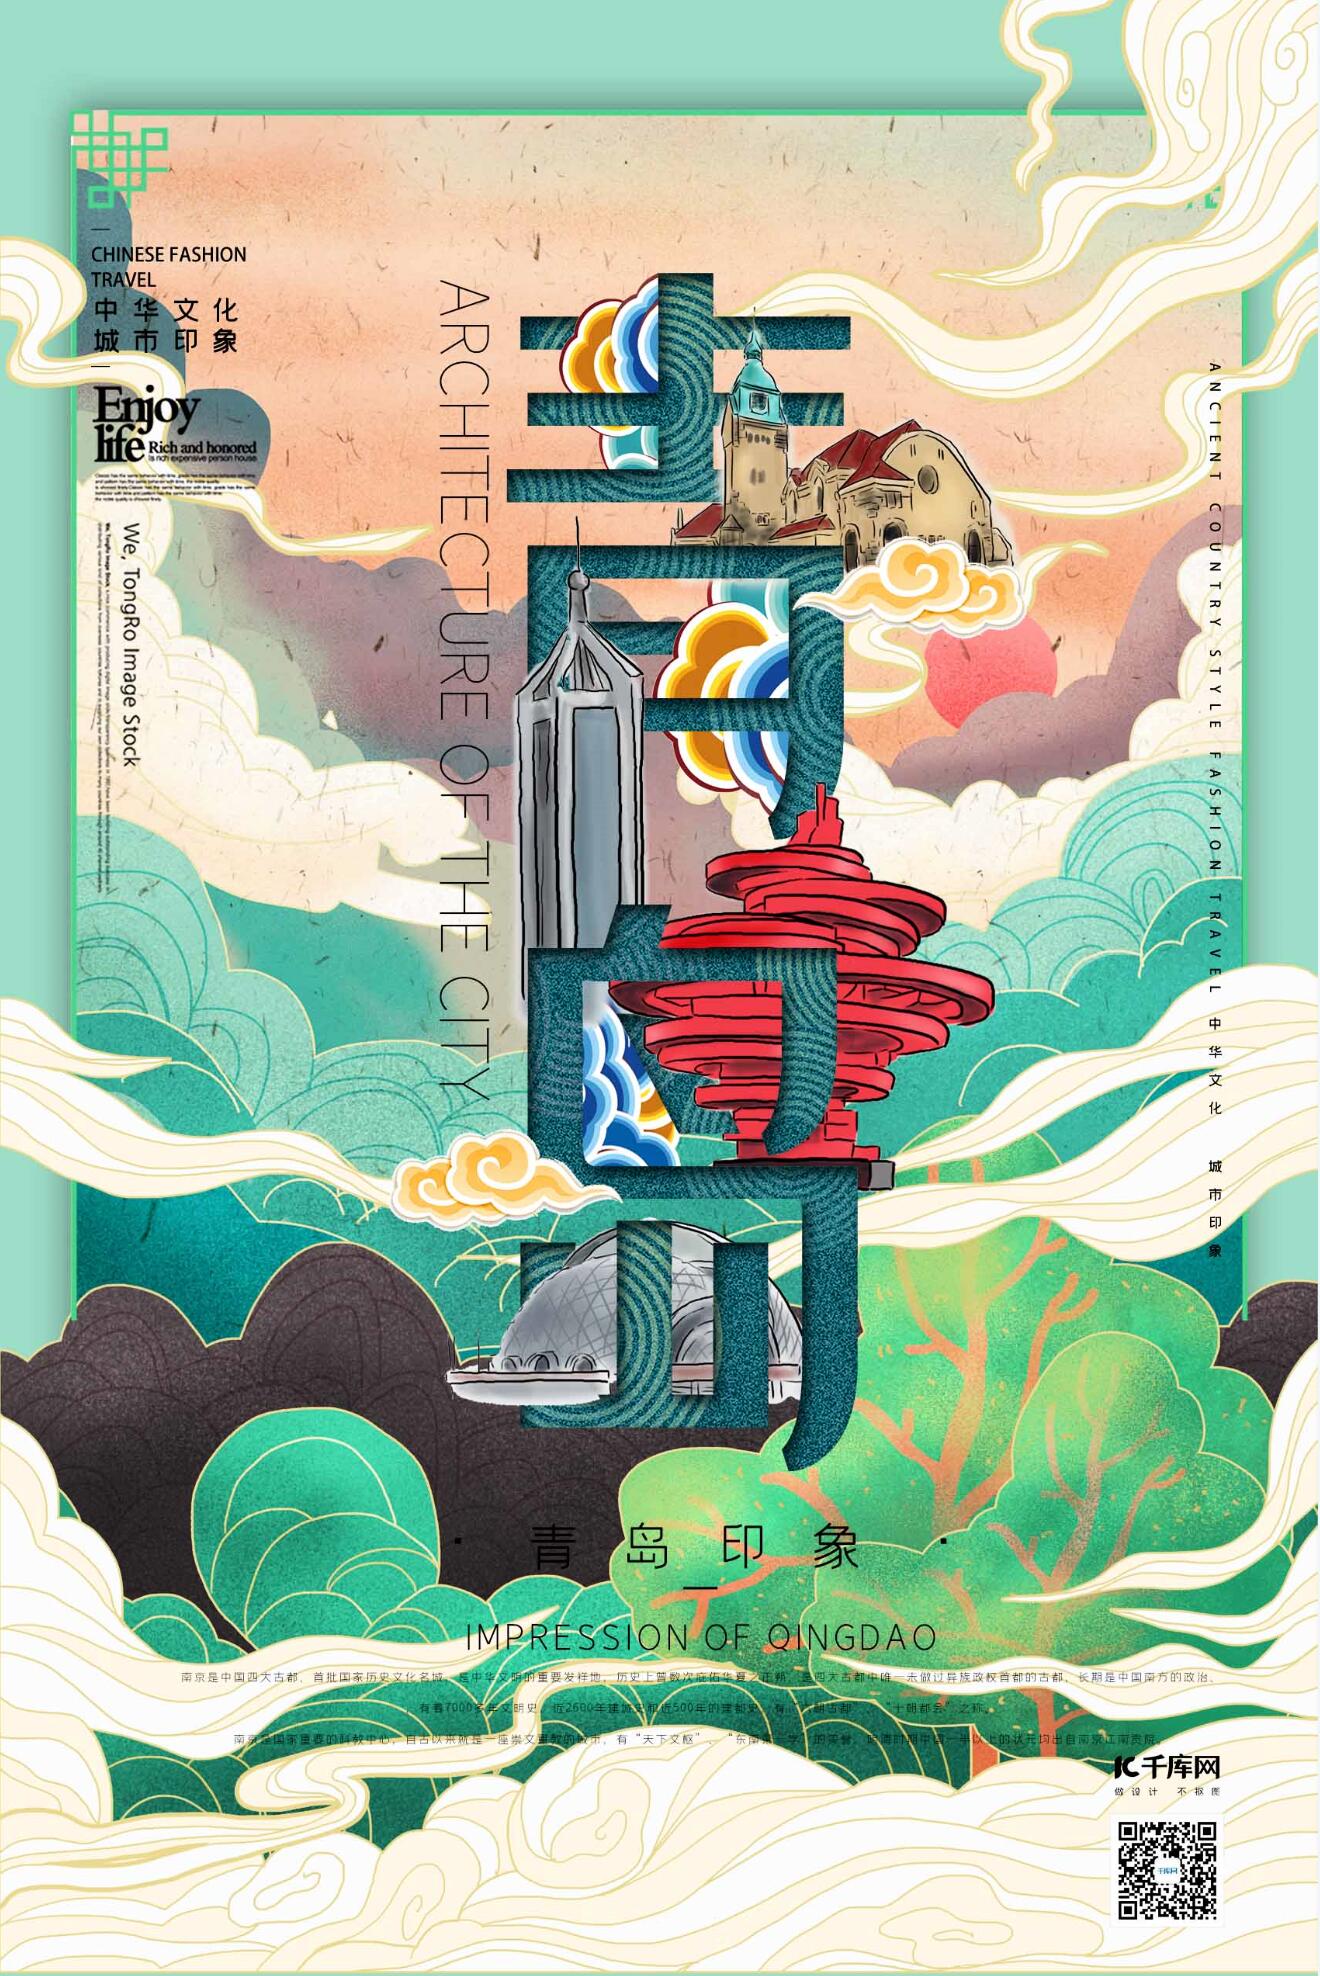 中华文化城市印象之青岛中国风薄荷绿插画海报图片